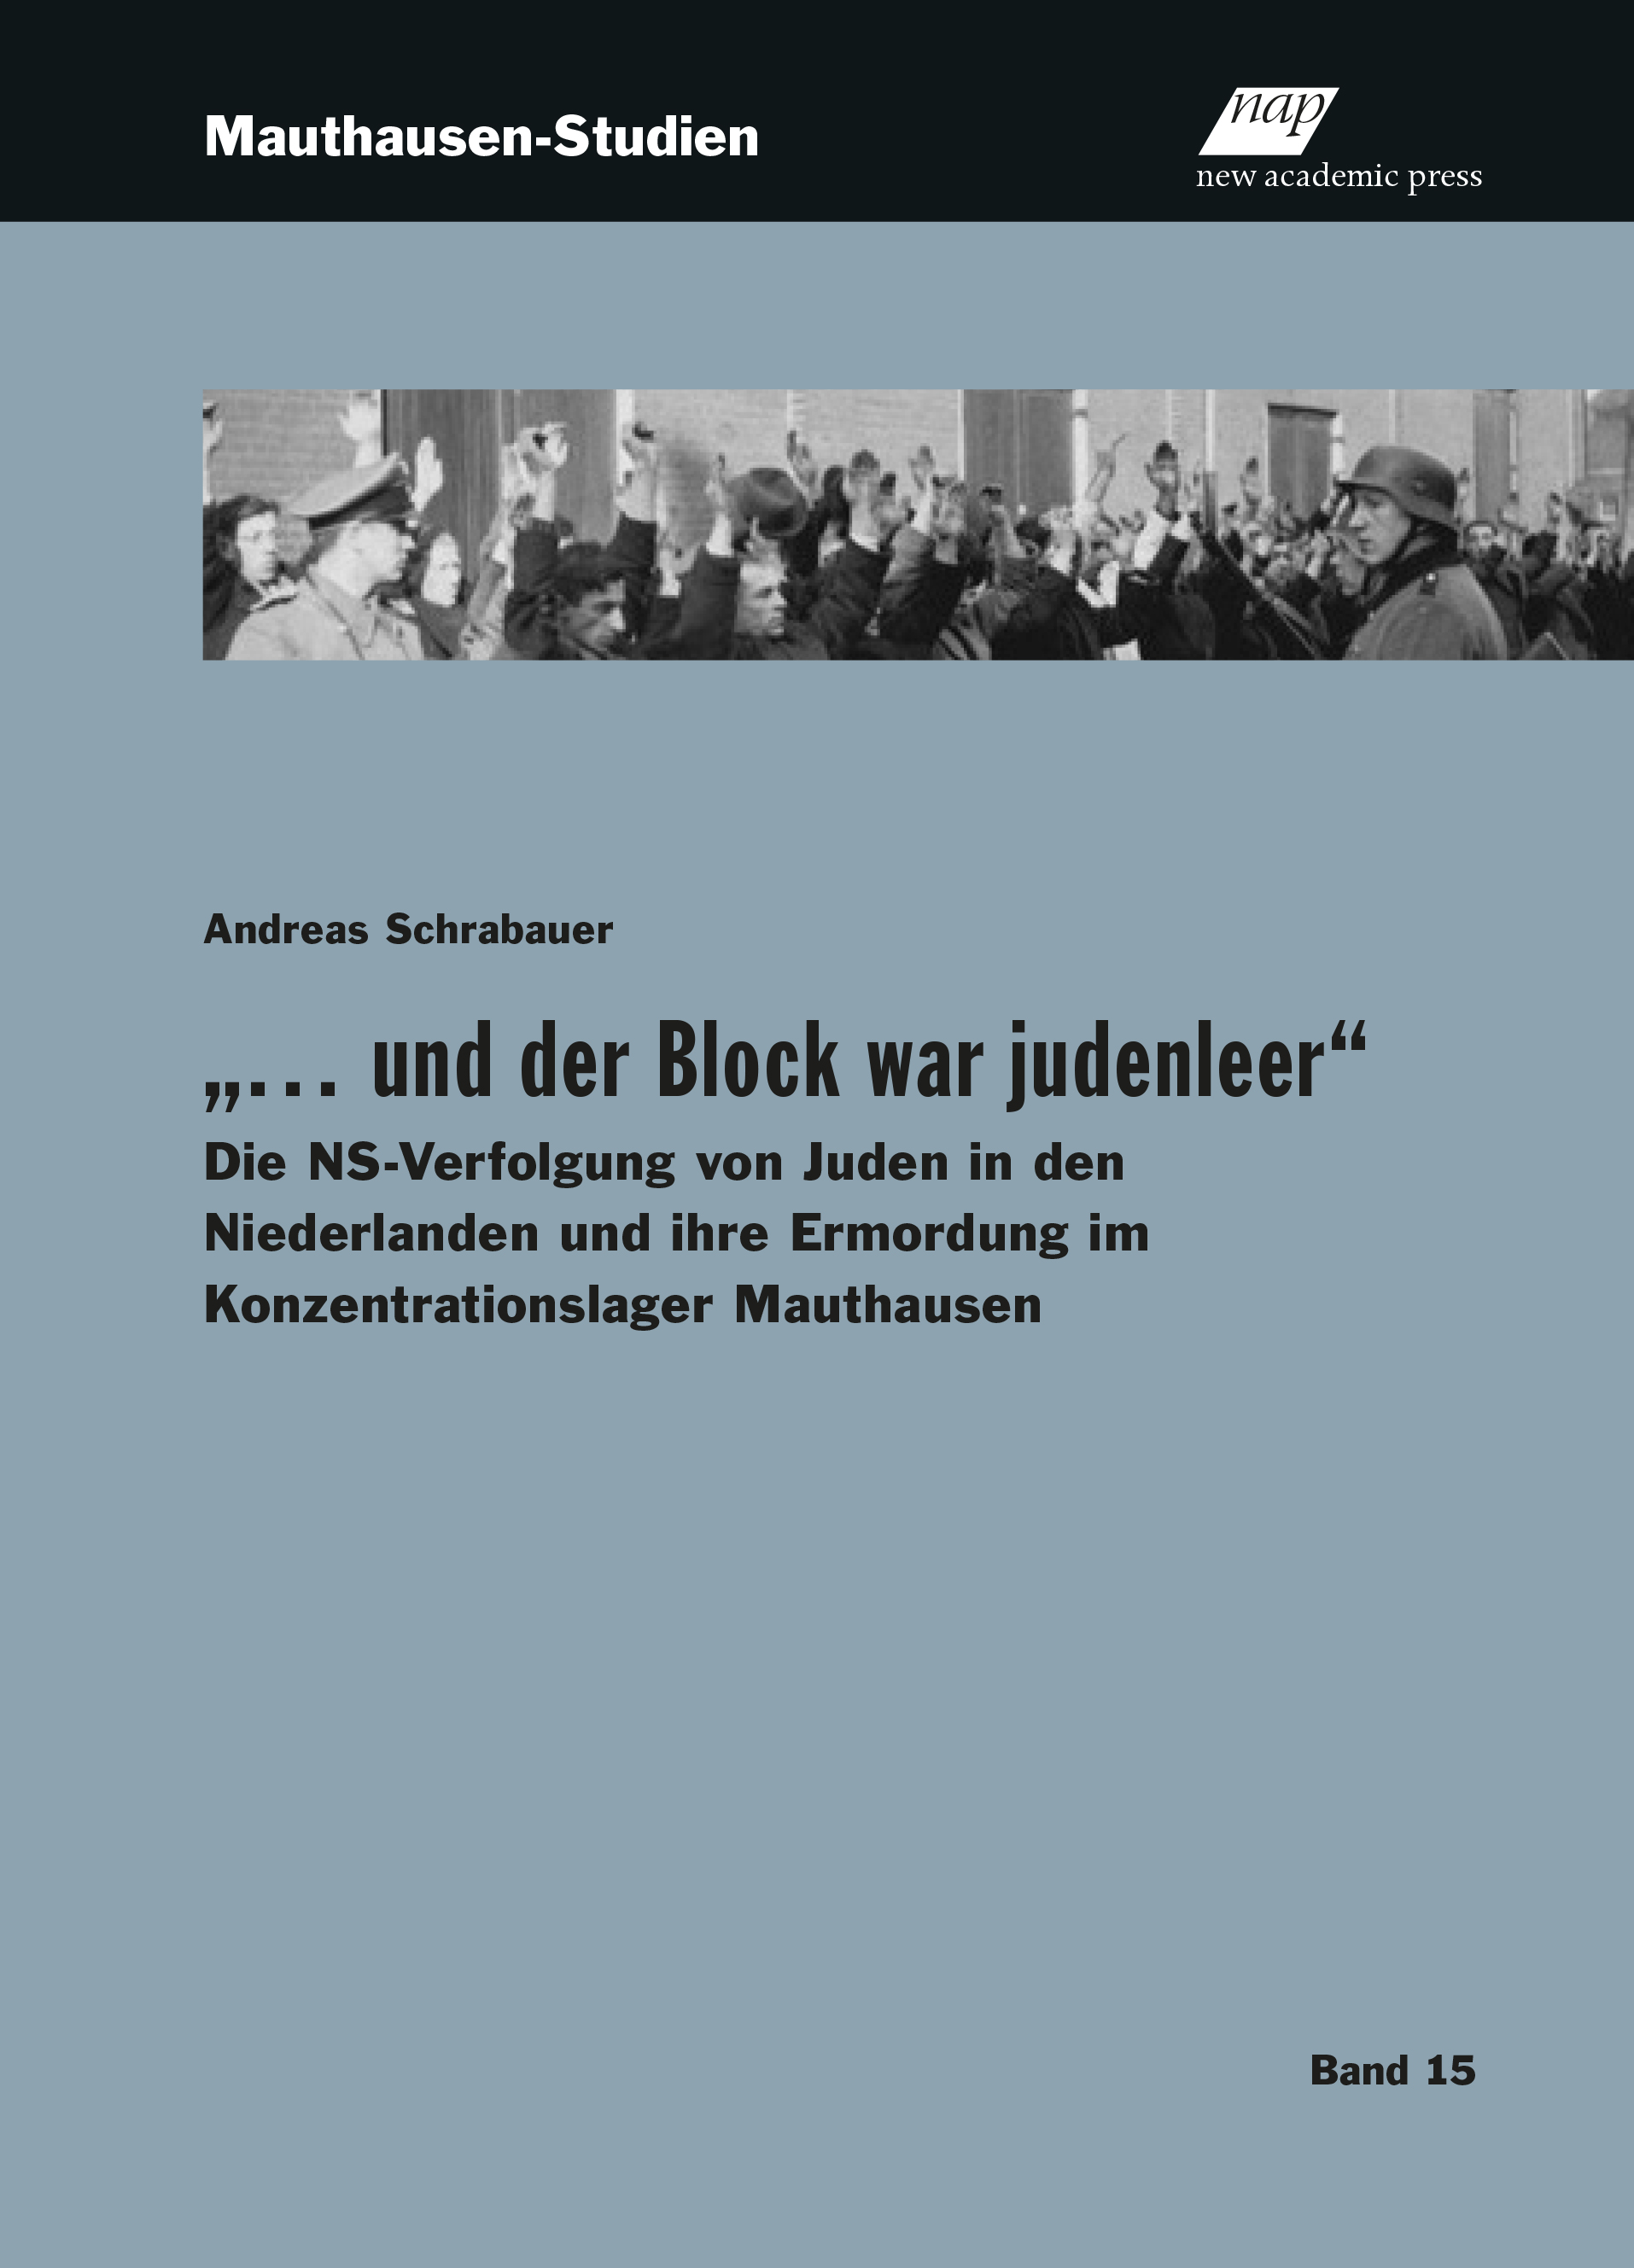 Cover des Buches "Und der Block war judenleer"